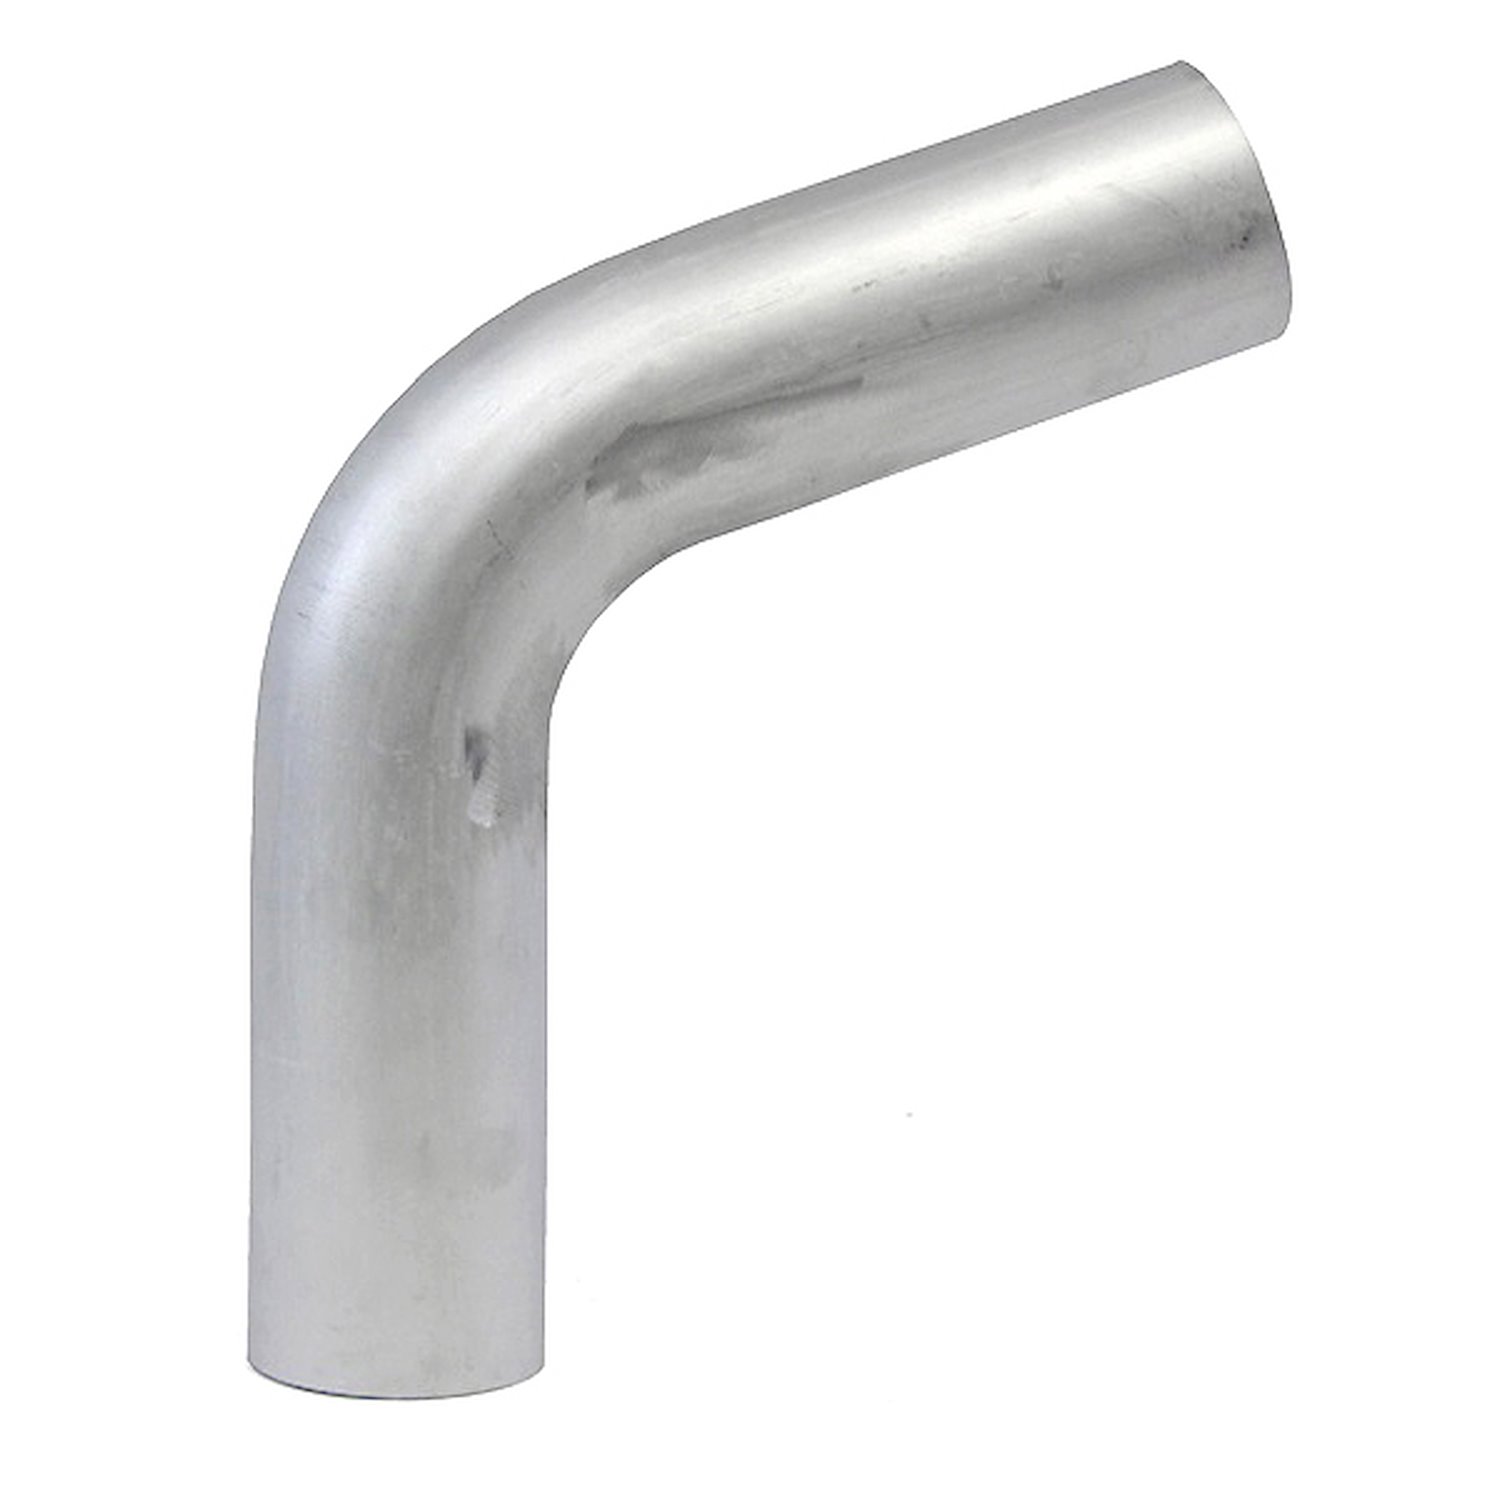 AT70-225-CLR-3 Aluminum Elbow Tube, 6061 Aluminum, 70-Degree Bend Elbow Tubing, 2-1/4 in. OD, Large Radius, 3 in. CLR